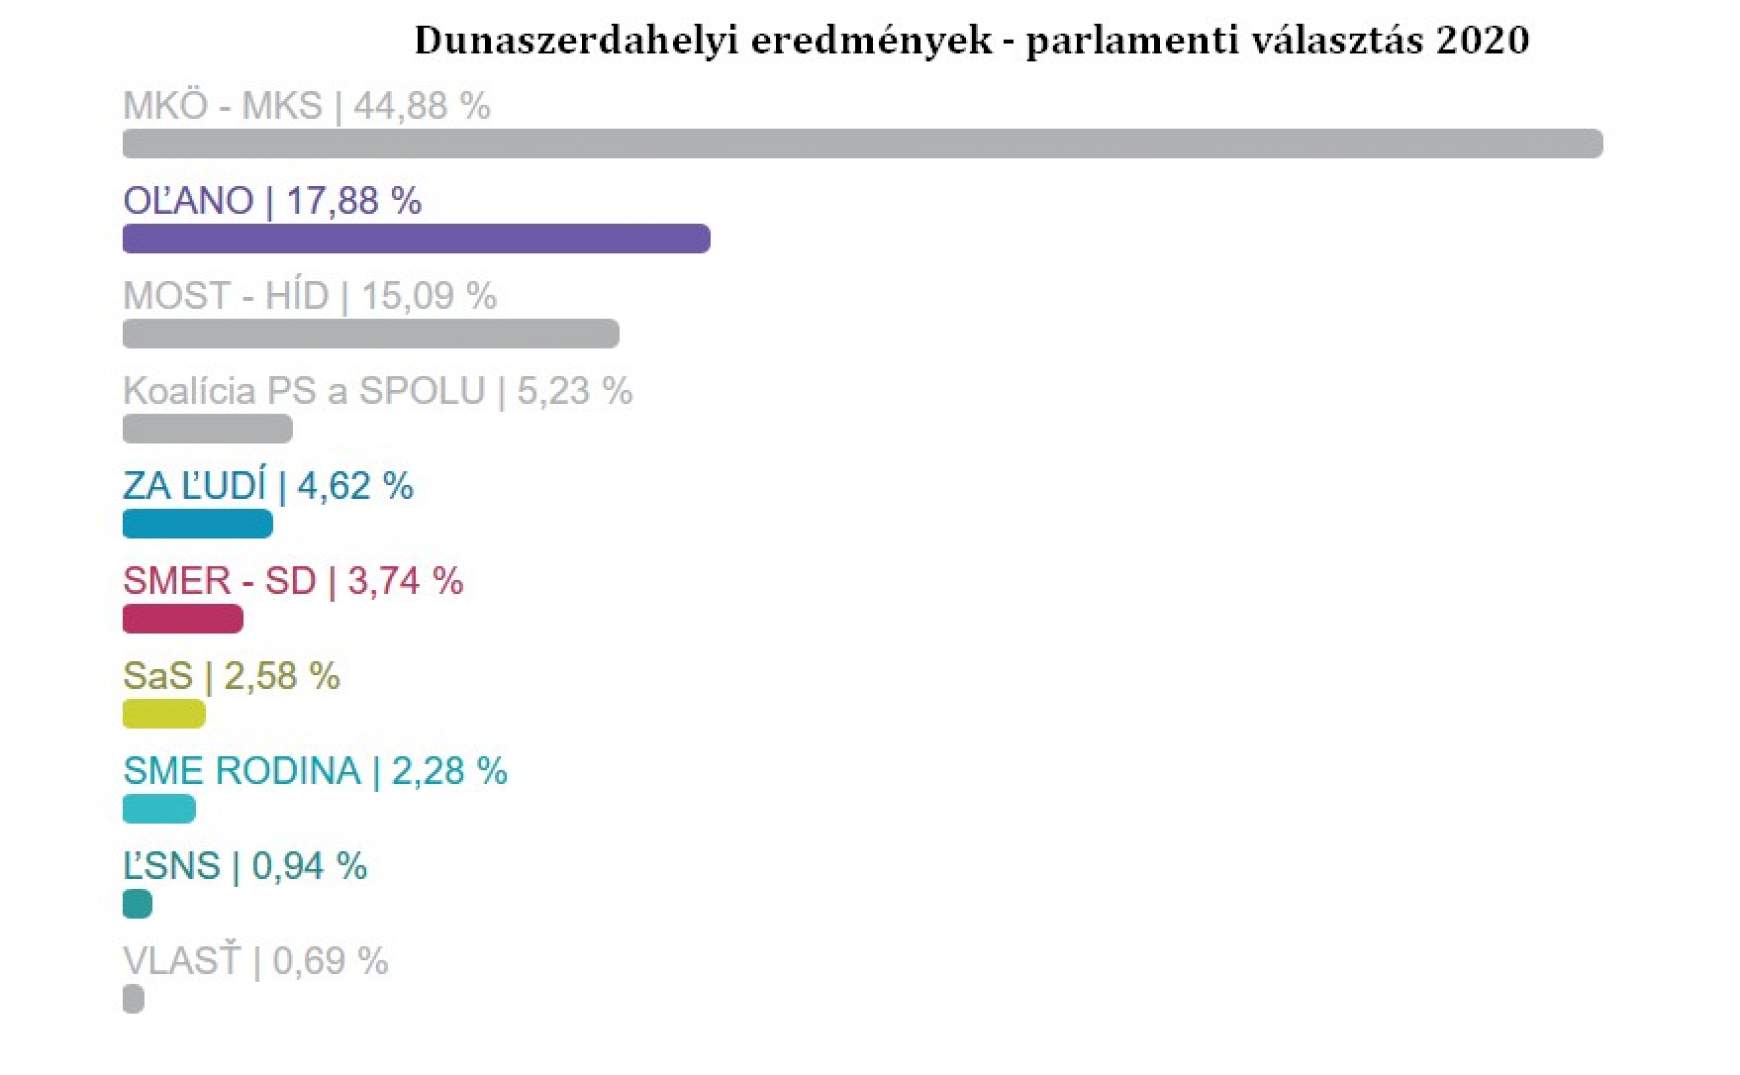 Dunaszerdahelyi eredmények